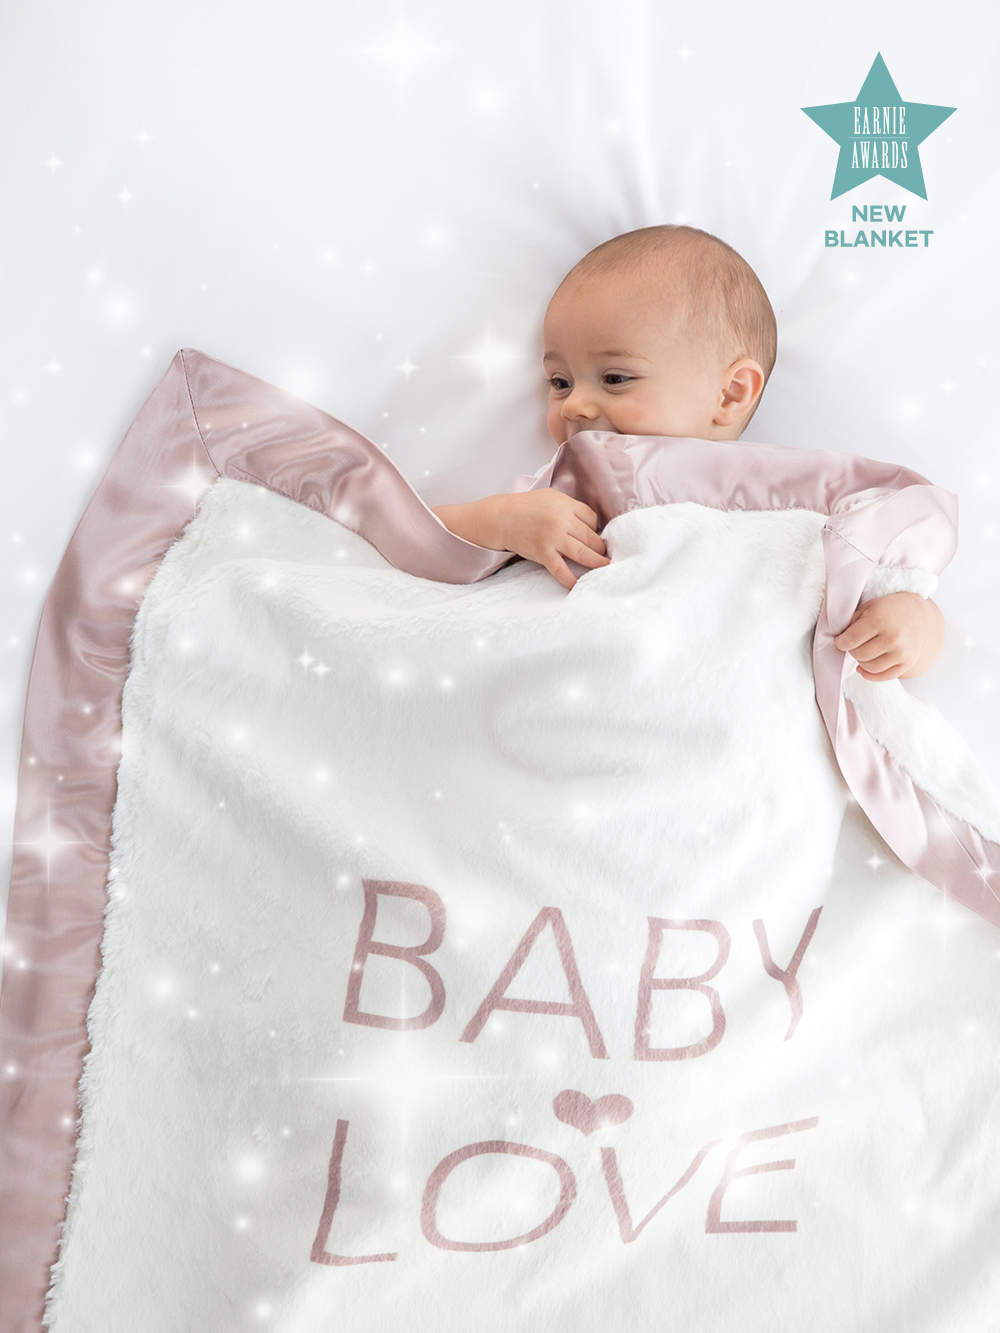 Luxe™ Baby Love Blanket